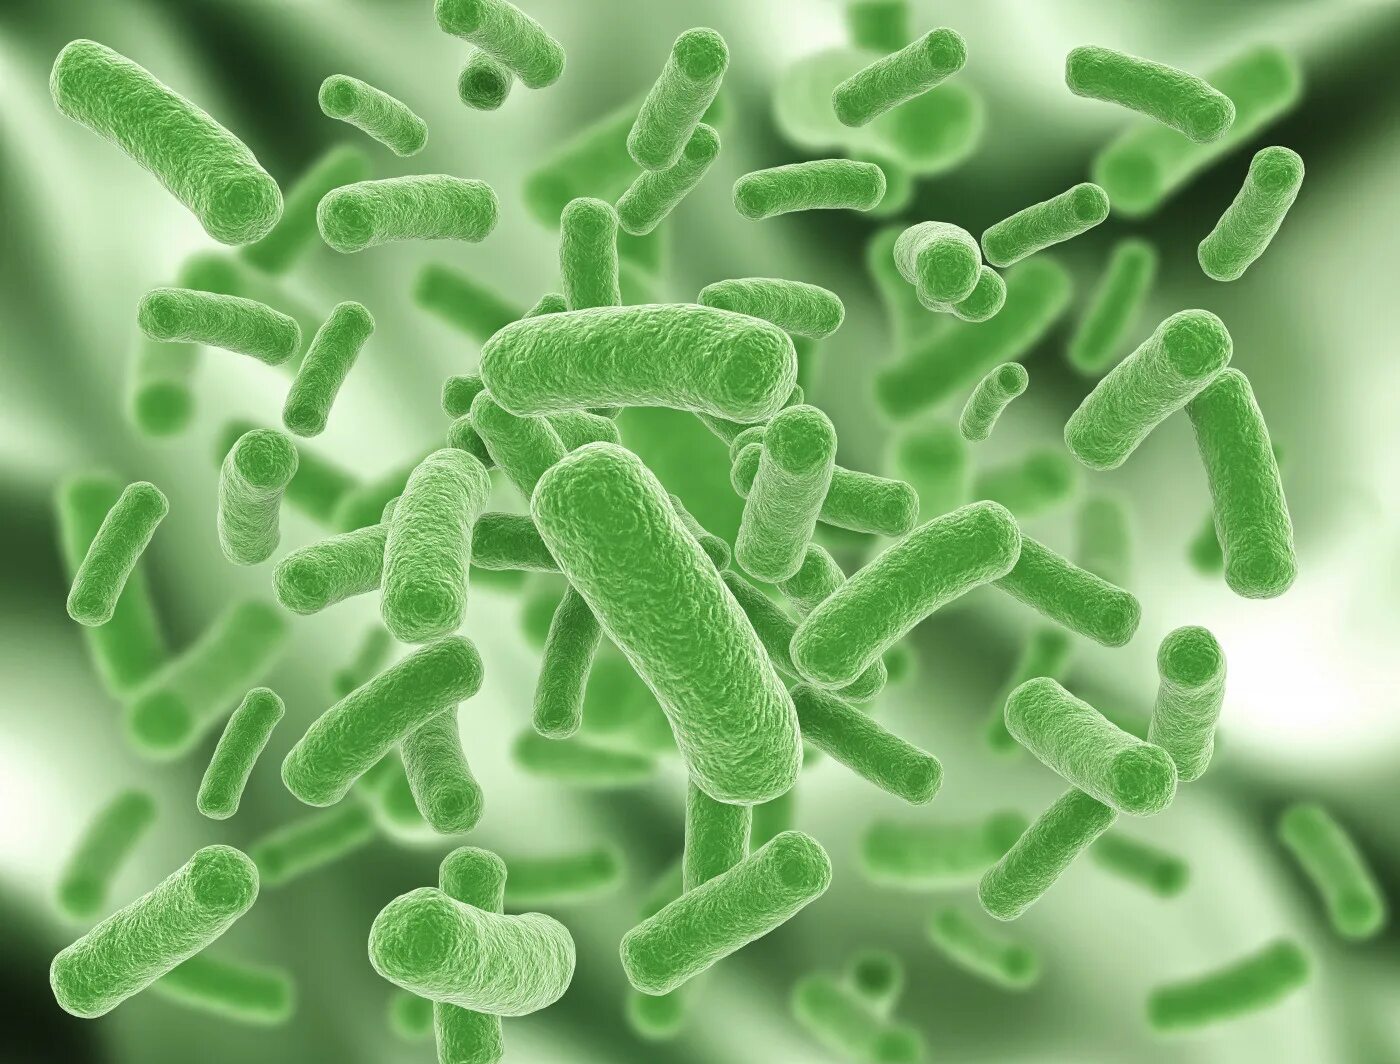 Бактерии в бескислородной среде. Микобактерия туберкулеза анаэроб. Бациллы аэробы. Бифидобактерии анаэробы. Аэробные и анаэробные бактерии.